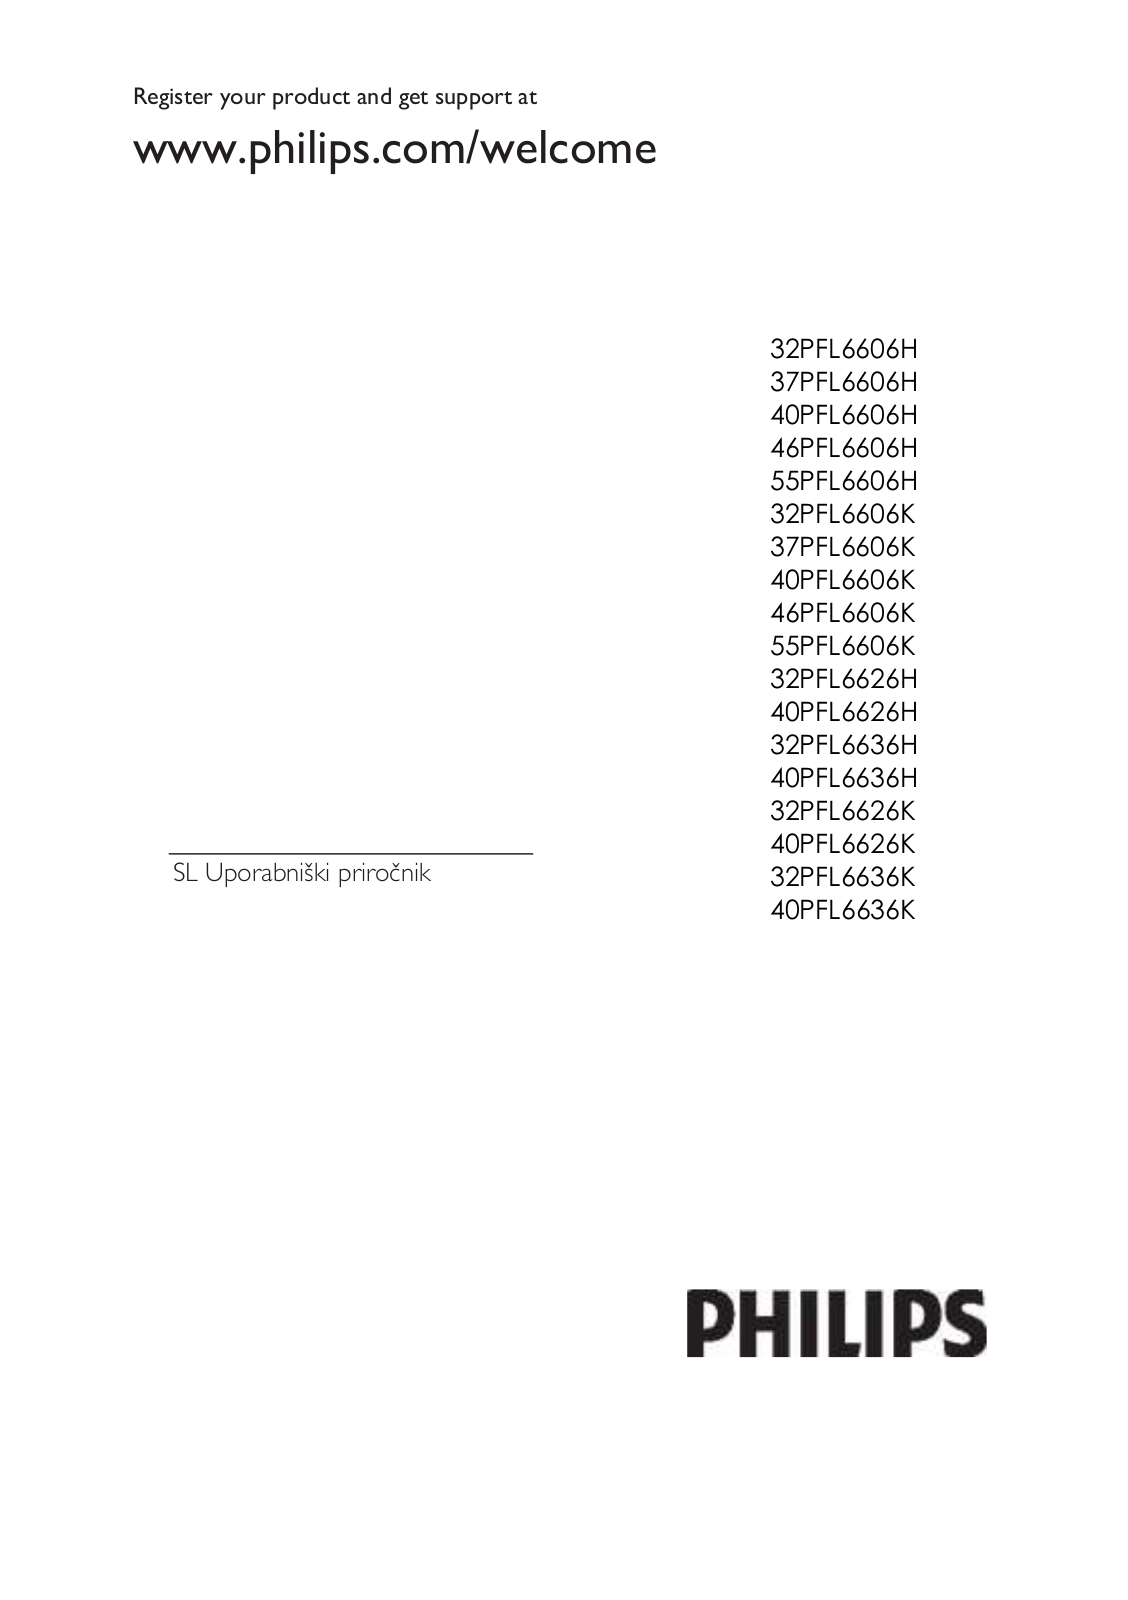 Philips 32PFL6606H, 37PFL6606H, 40PFL6606H, 46PFL6606H, 55PFL6606H User Manual